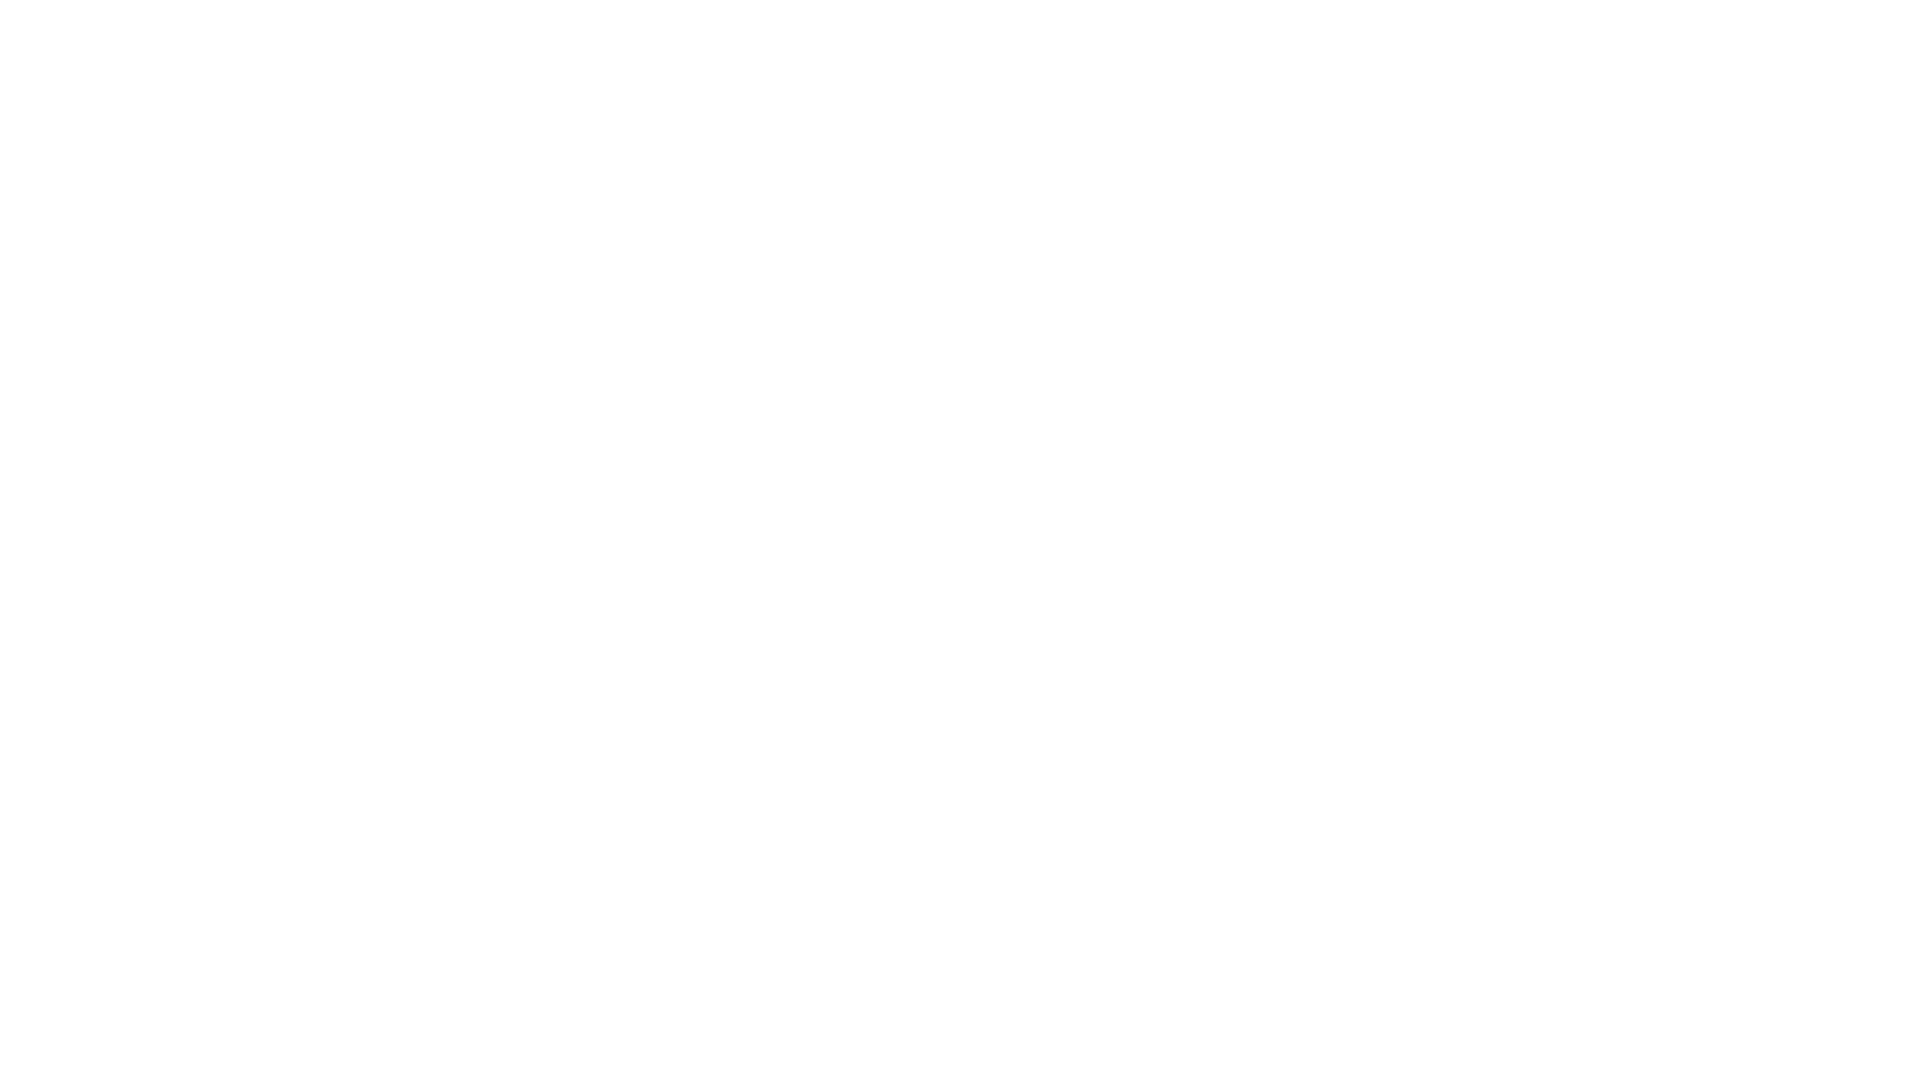 loader image